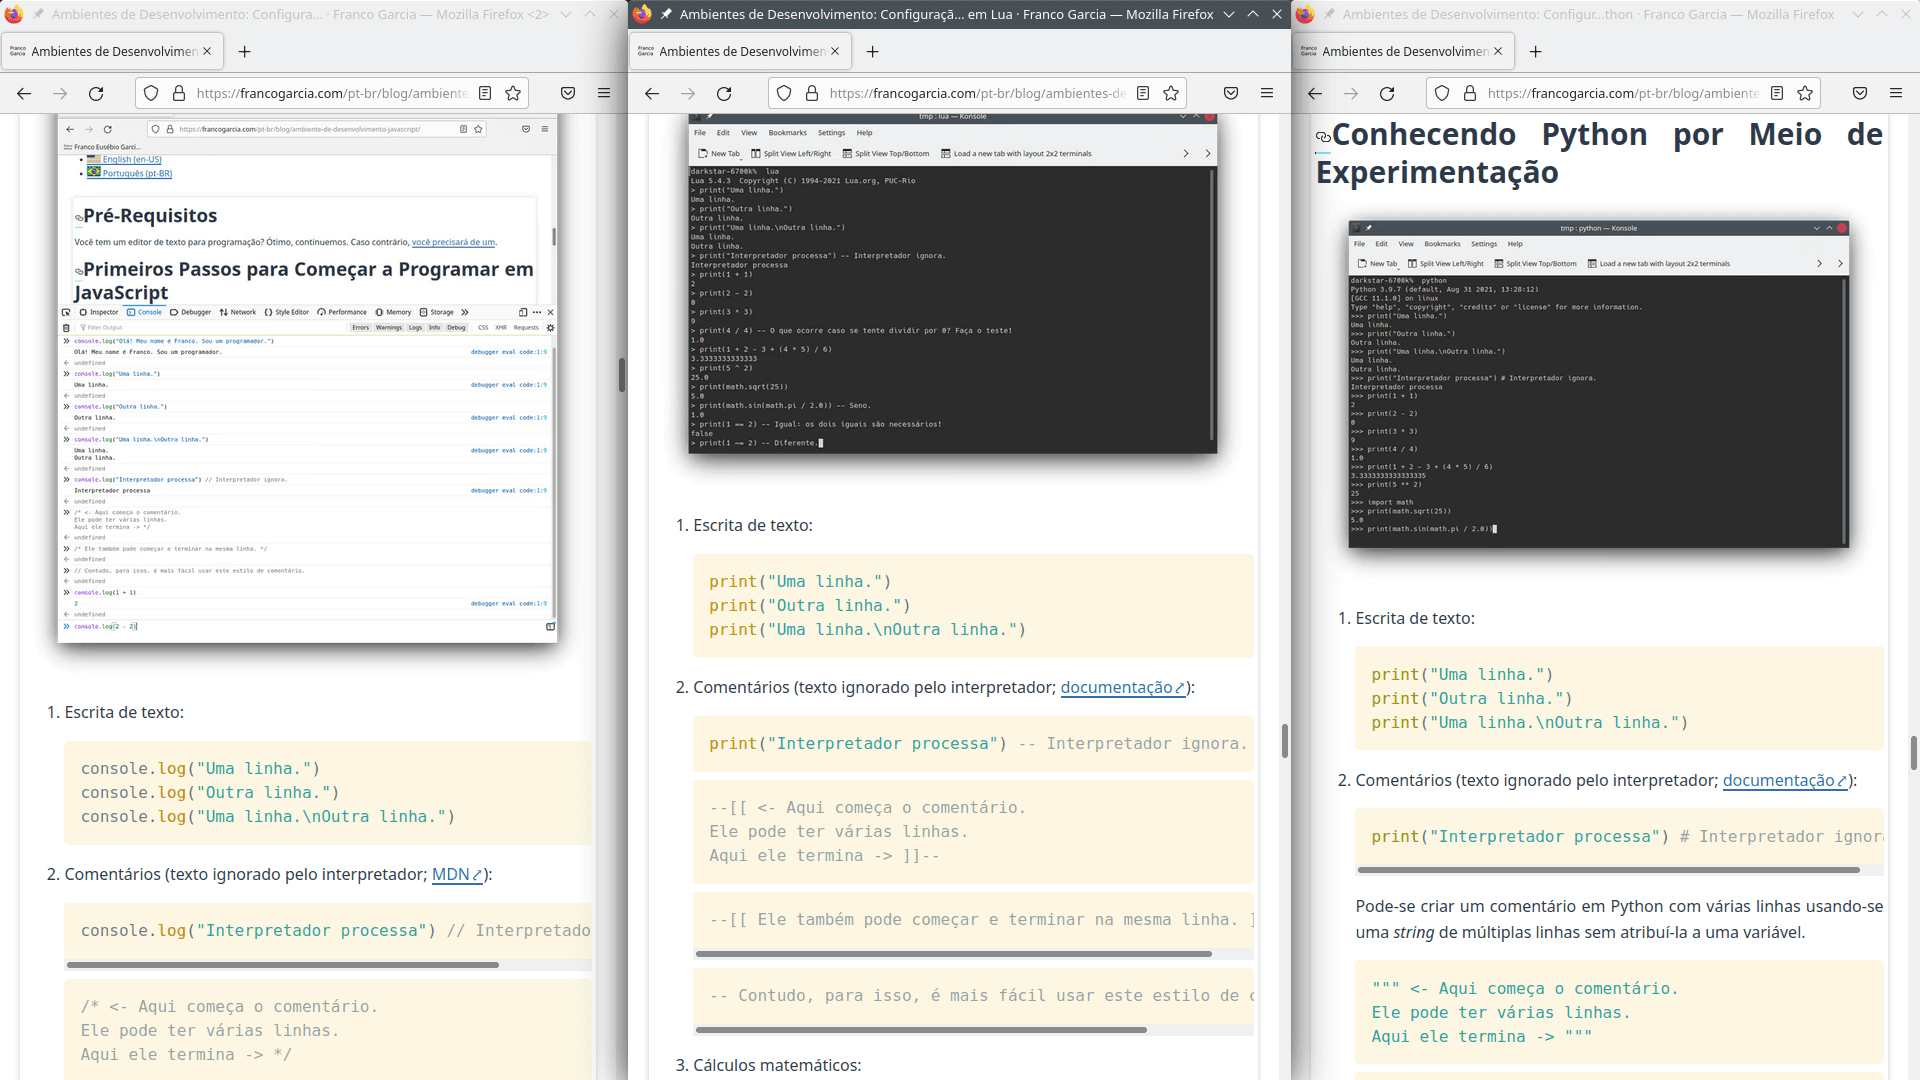 Exemplos de código-fonte para as linguagens de programação JavaScript, Lua e Python, que foram apresentados nas páginas de configuração de ambiente de desenvolvimento.